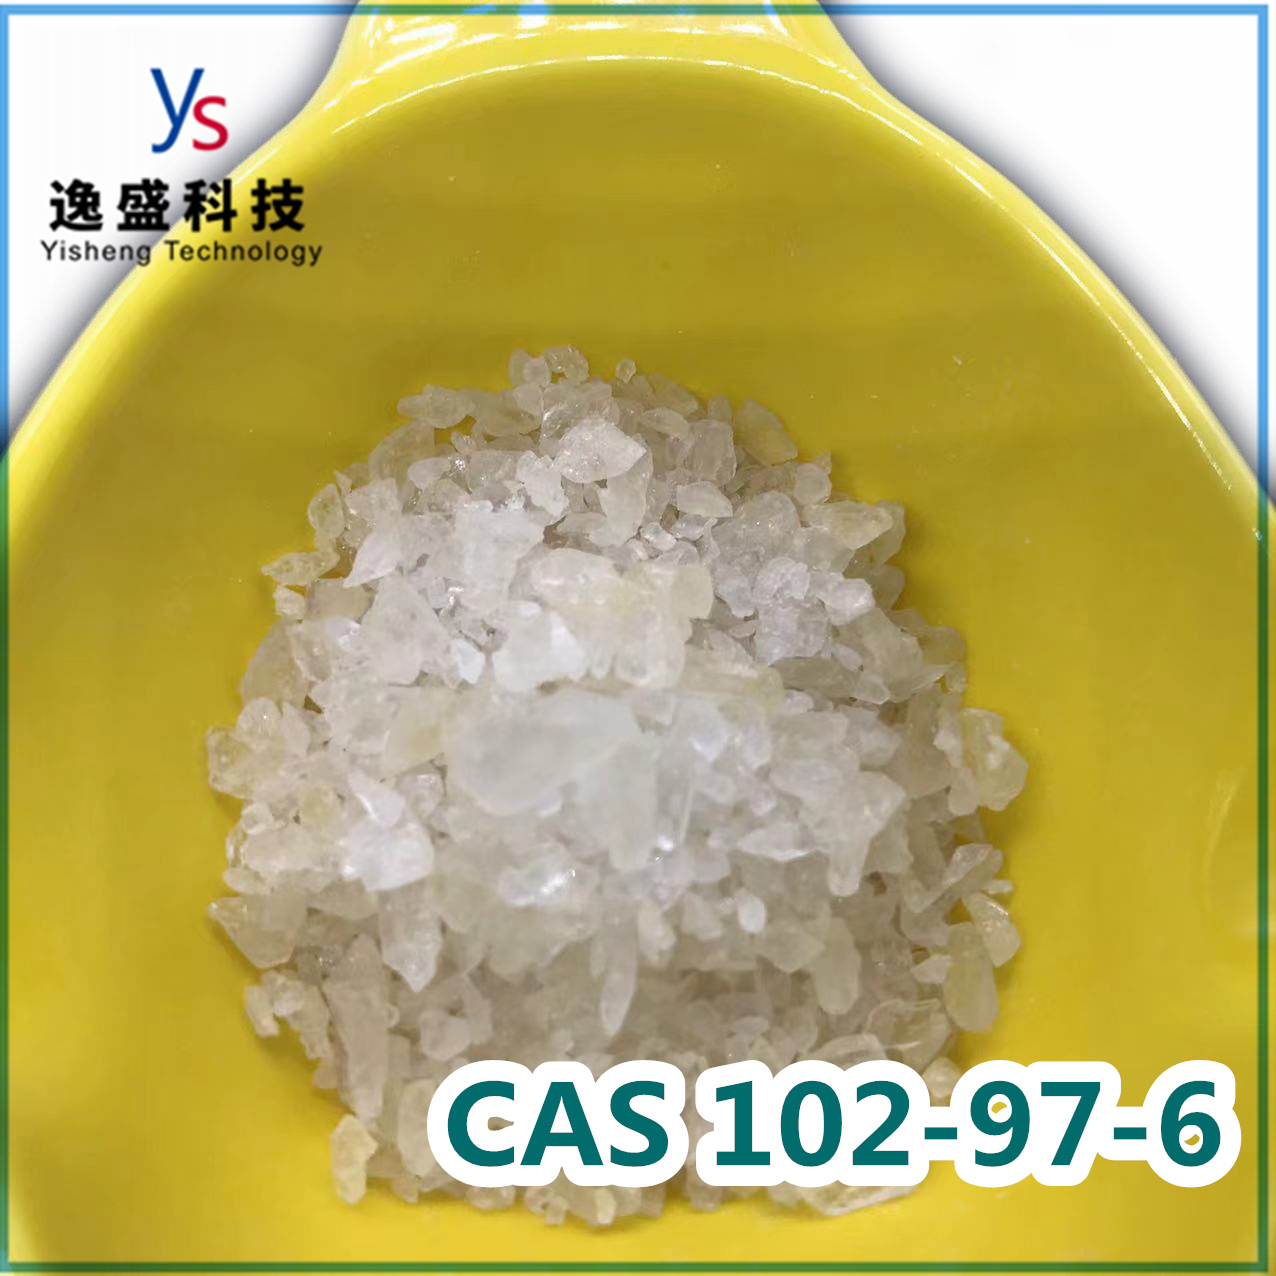  Cas 102-97-6 Polvo de calidad superior de bencilisopropilamina